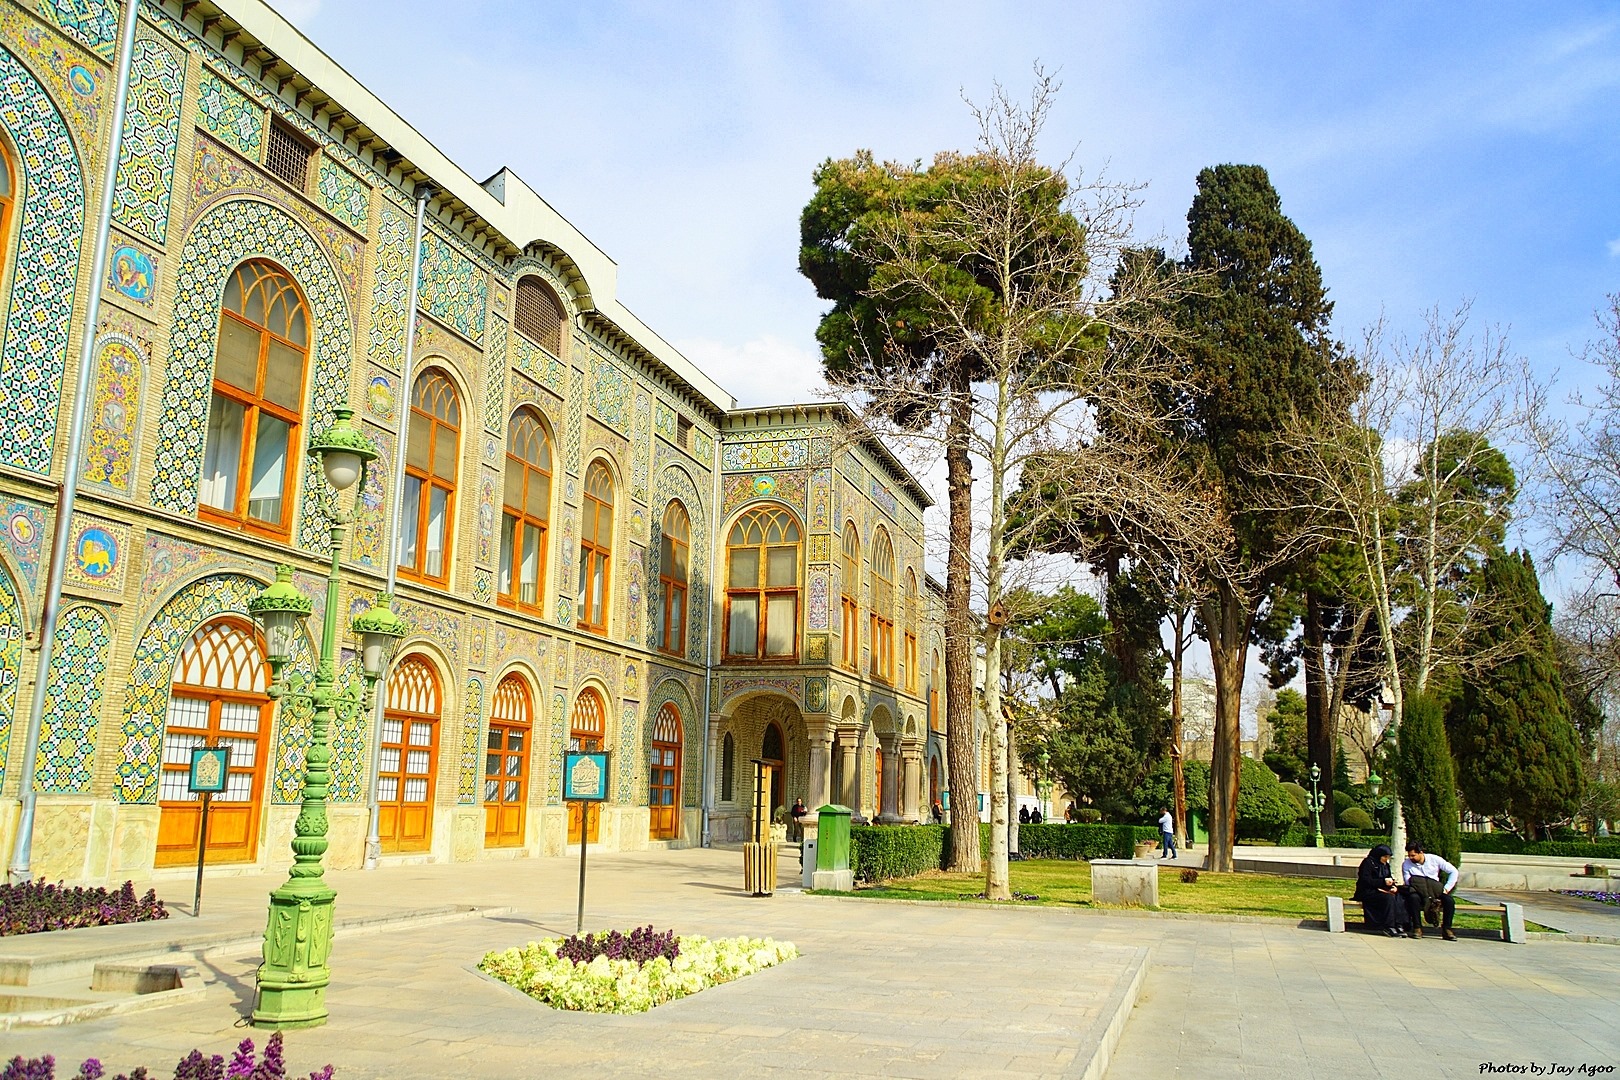 60131123 10216594791654983 8031600976802611200 o - Visit 27 UNESCO Heritage Sites in Iran